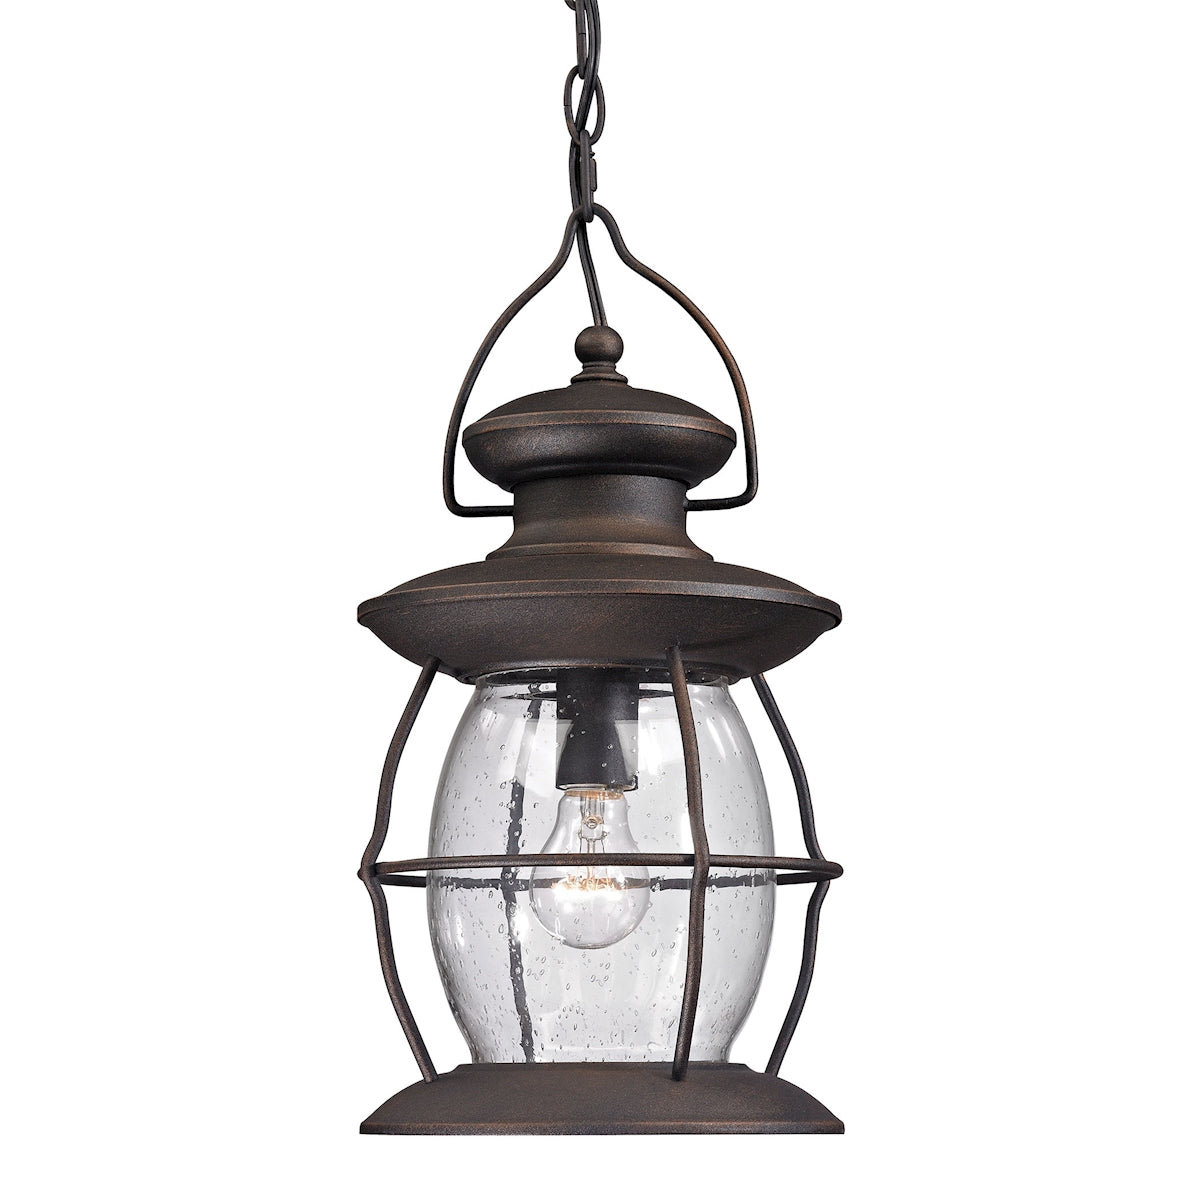 ELK Lighting 47043/1 Village Lantern 1-Light Outdoor Hanging Lantern in Weathered Charcoal